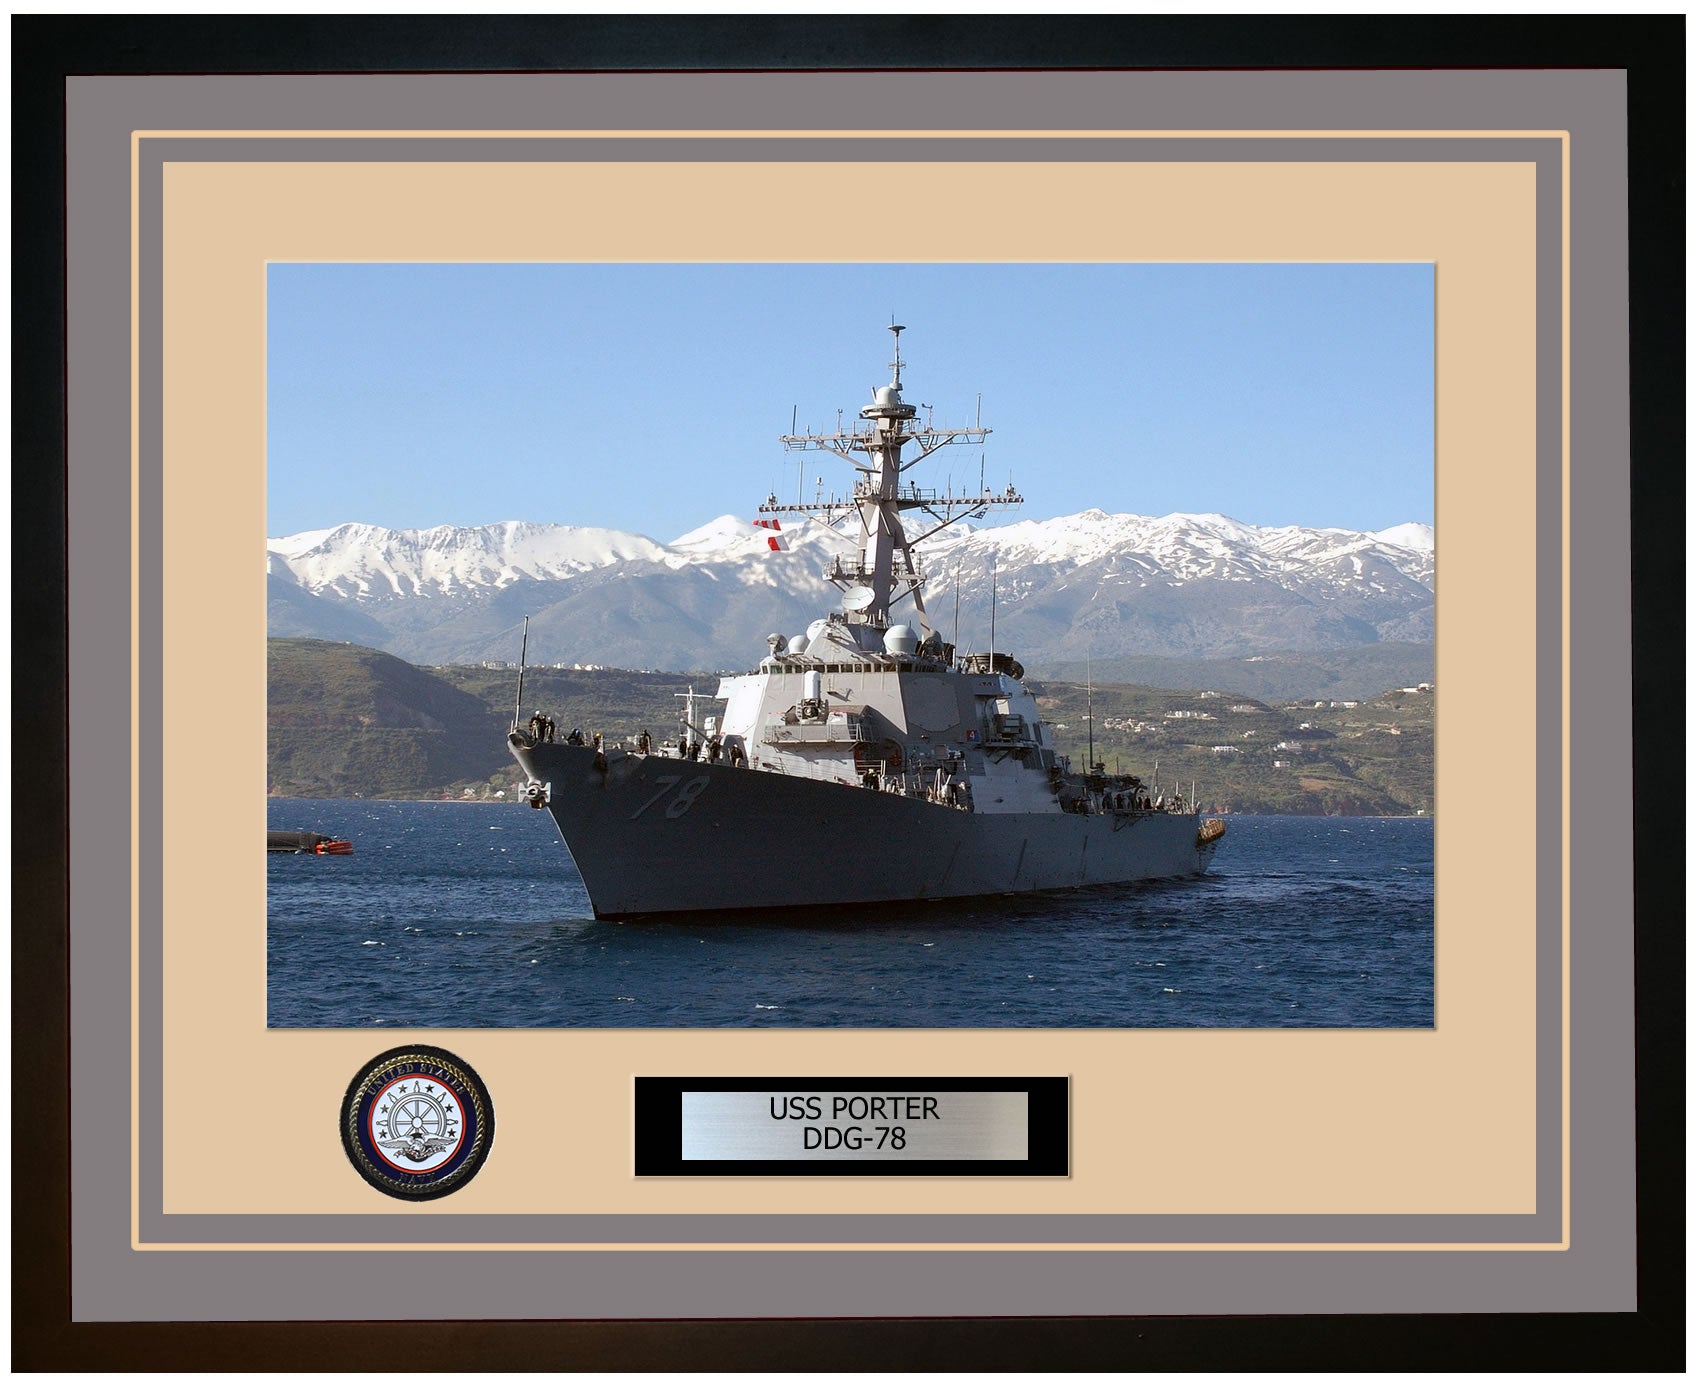 USS PORTER DDG-78 Framed Navy Ship Photo Grey